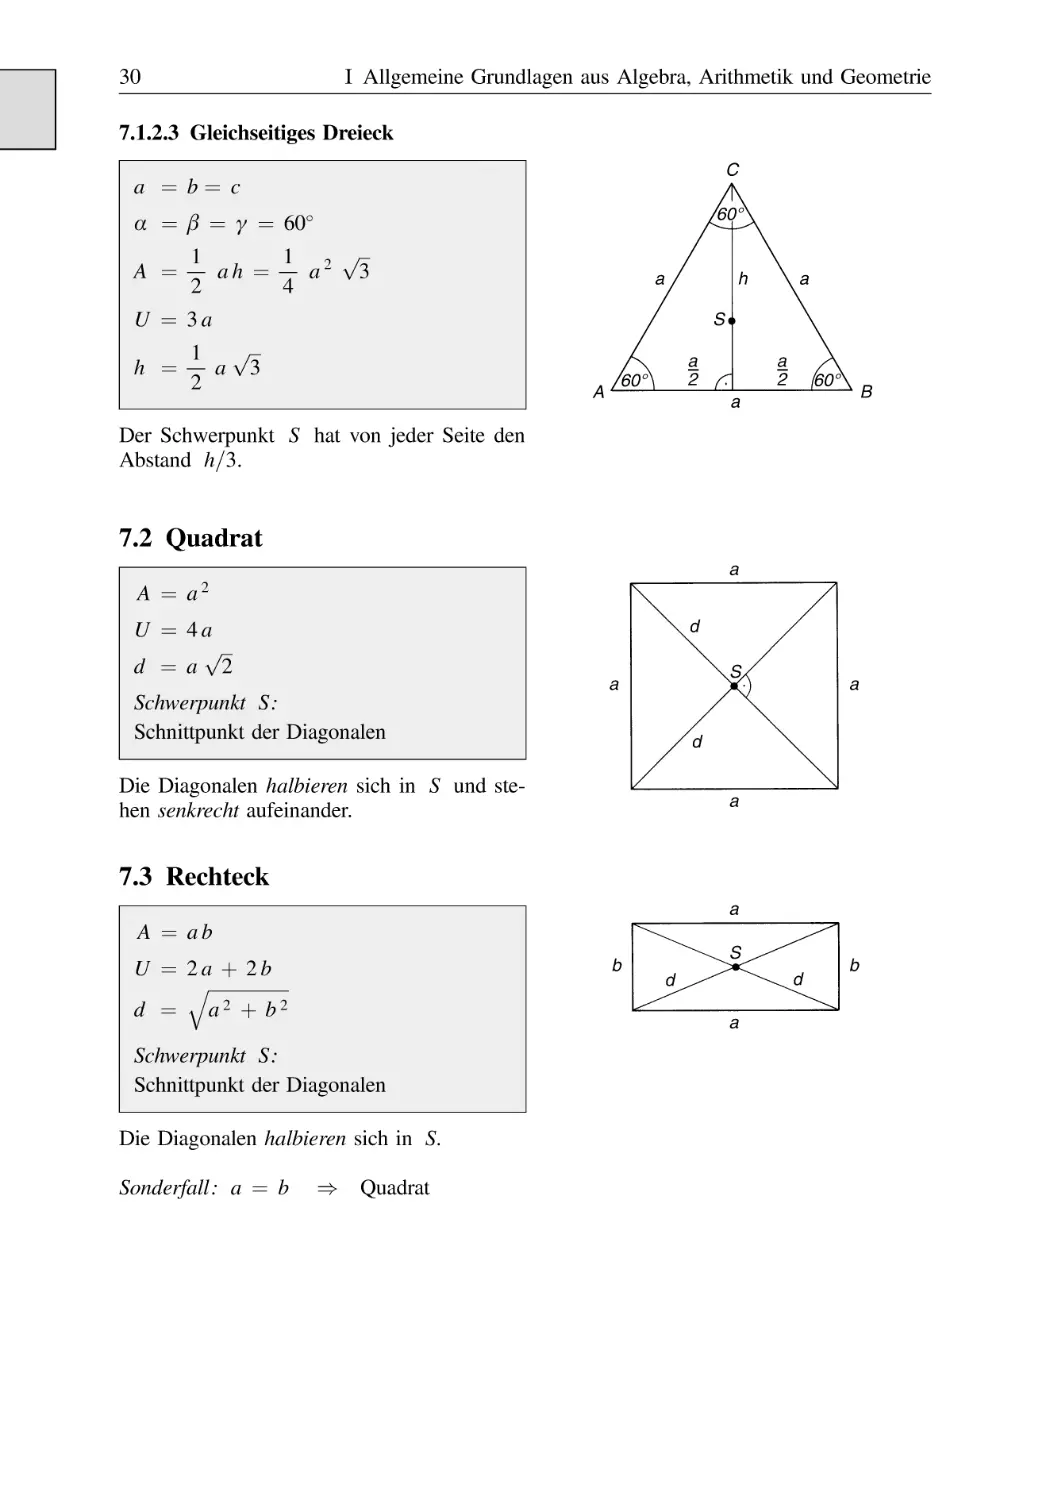 7.1.2.3 Gleichseitiges Dreieck
7.2 Quadrat
7.3 Rechteck